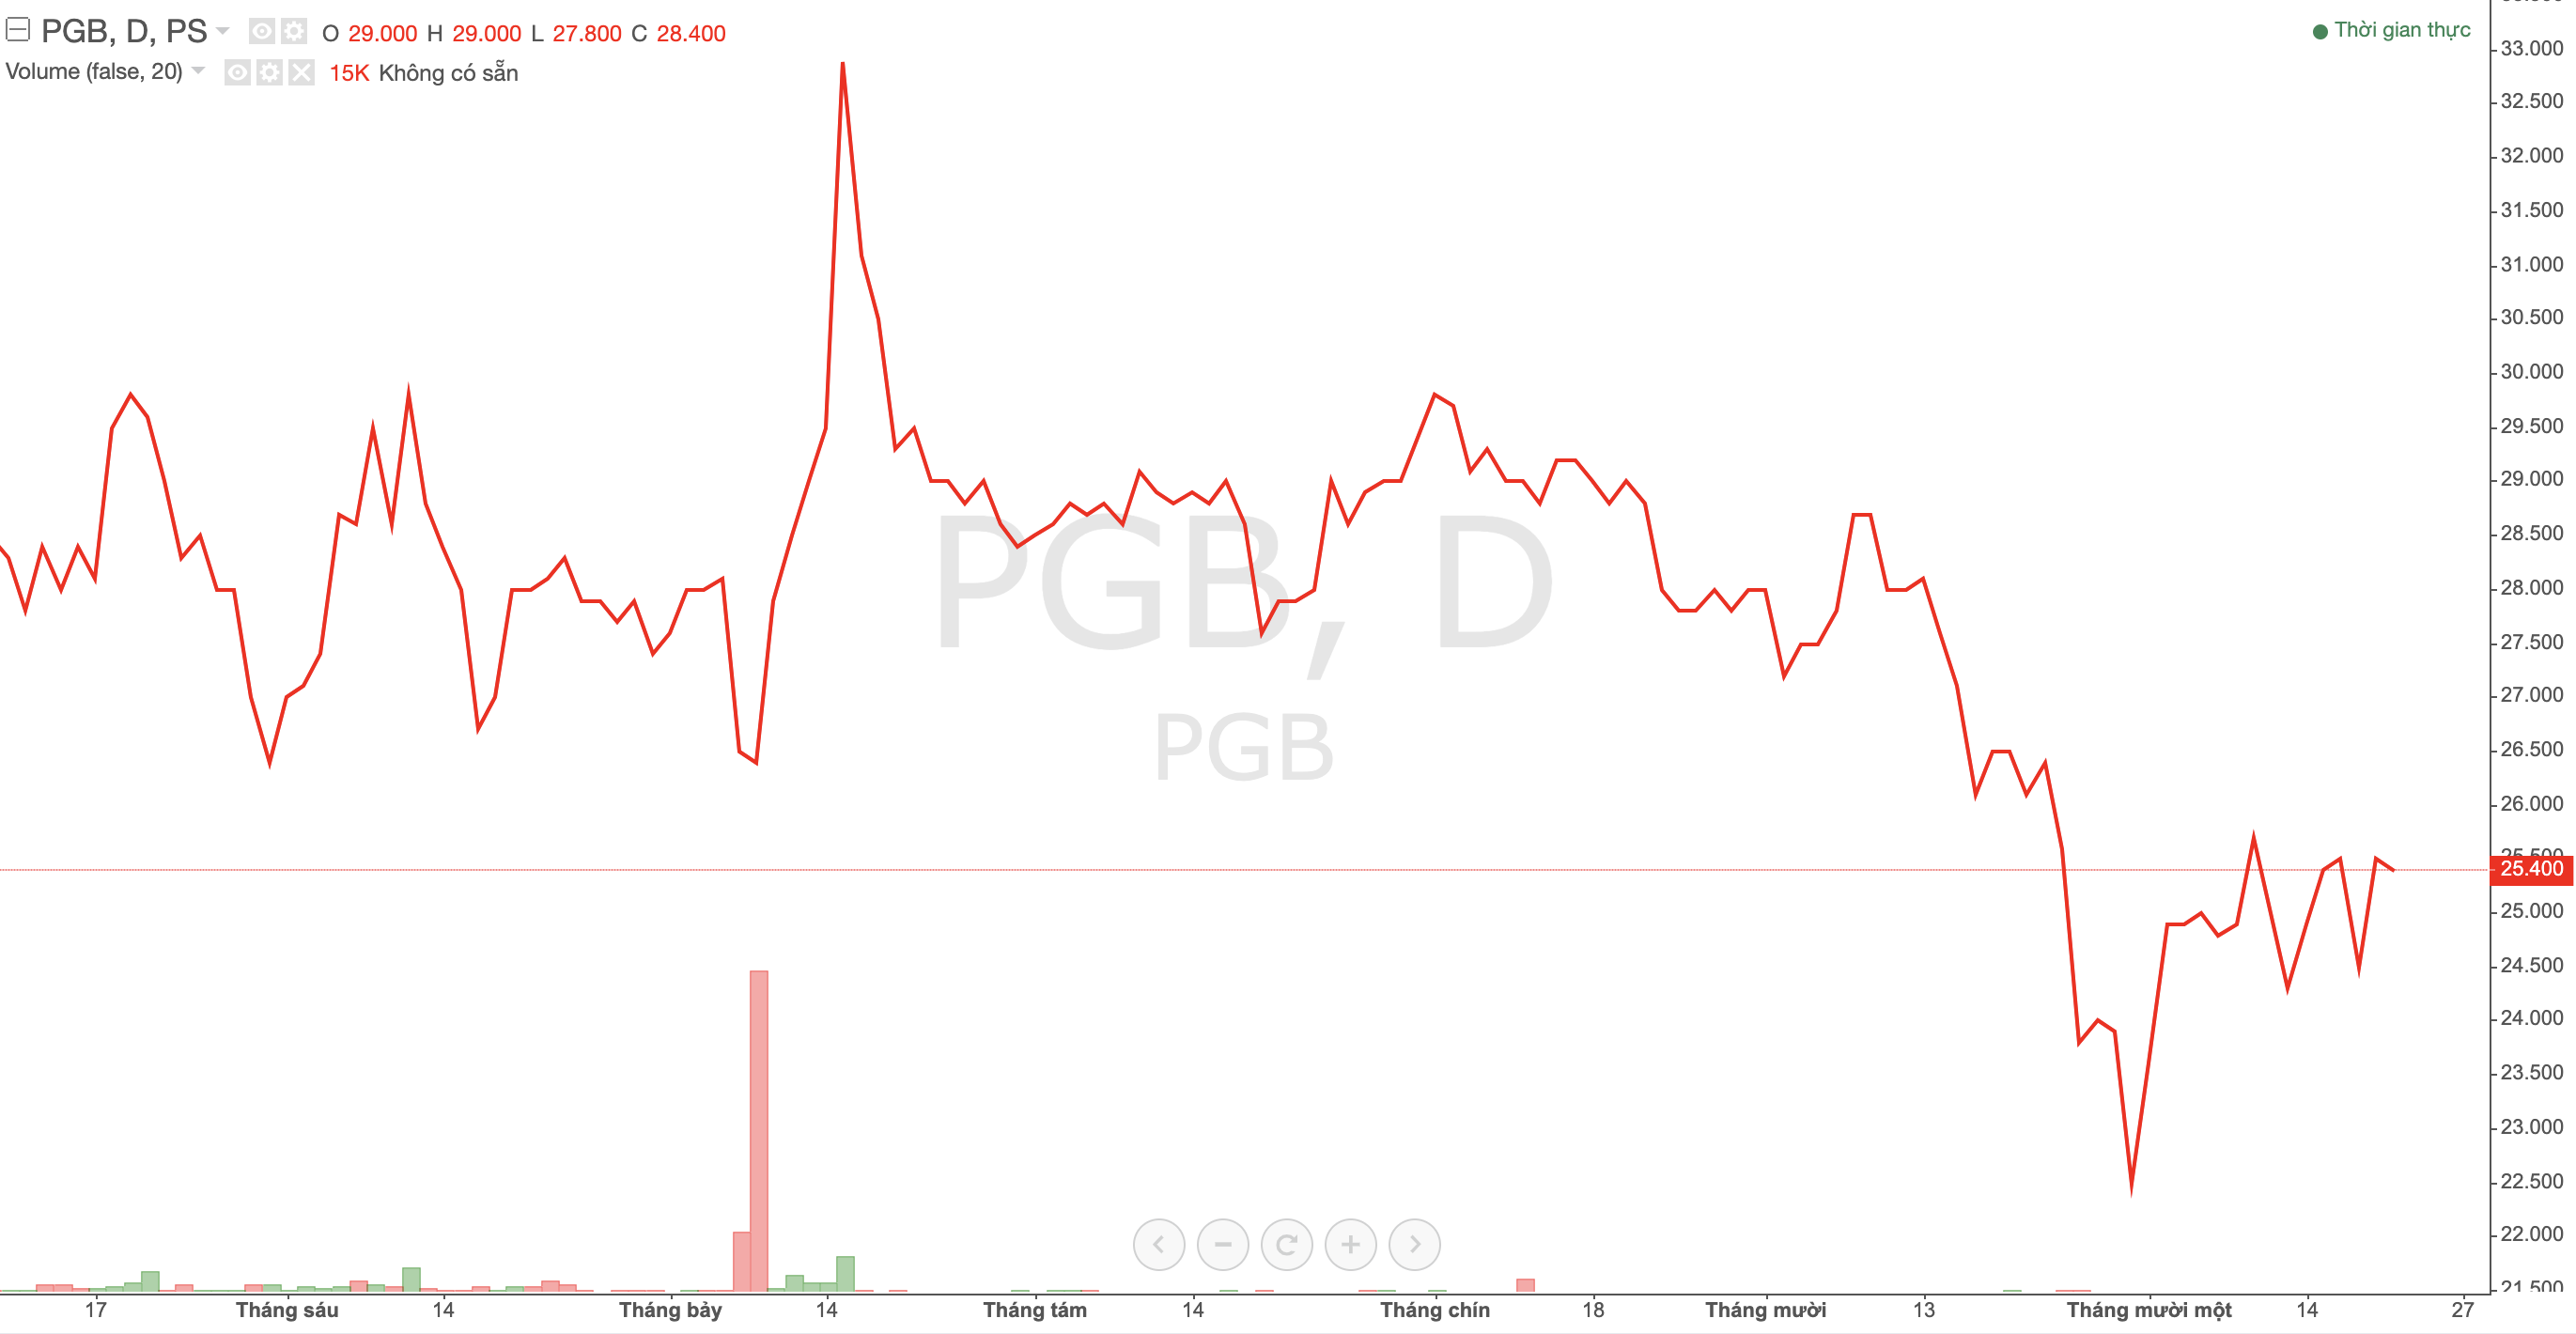 Sau khi Petrolimex thoái vốn, PG Bank muốn đổi tên thành Ngân hàng Thương mại Cổ phần Thịnh Vượng và Phát triển 2